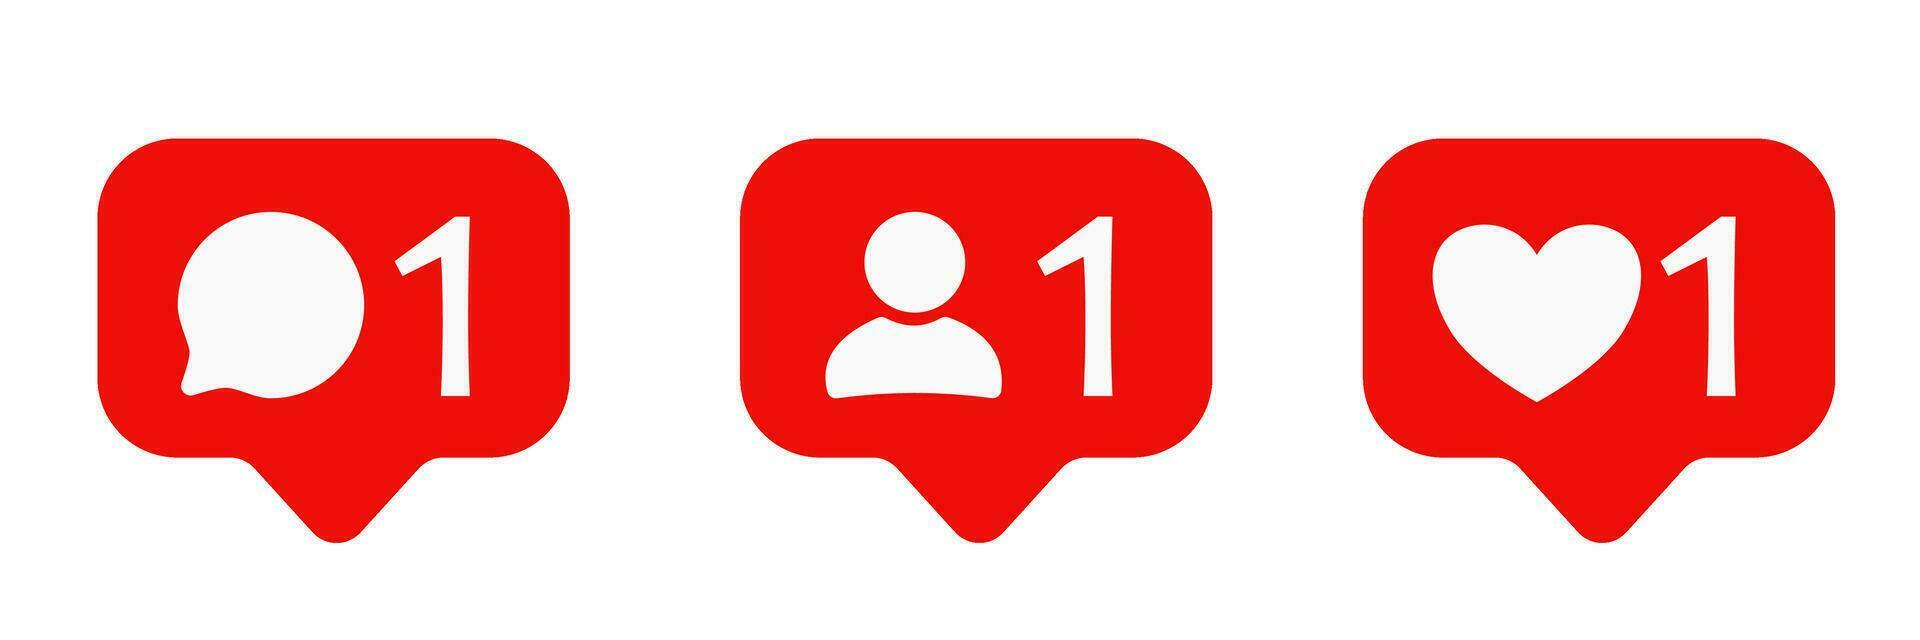 conjunto de social medios de comunicación notificación iconos comentario, usuario, como. habla burbuja vector